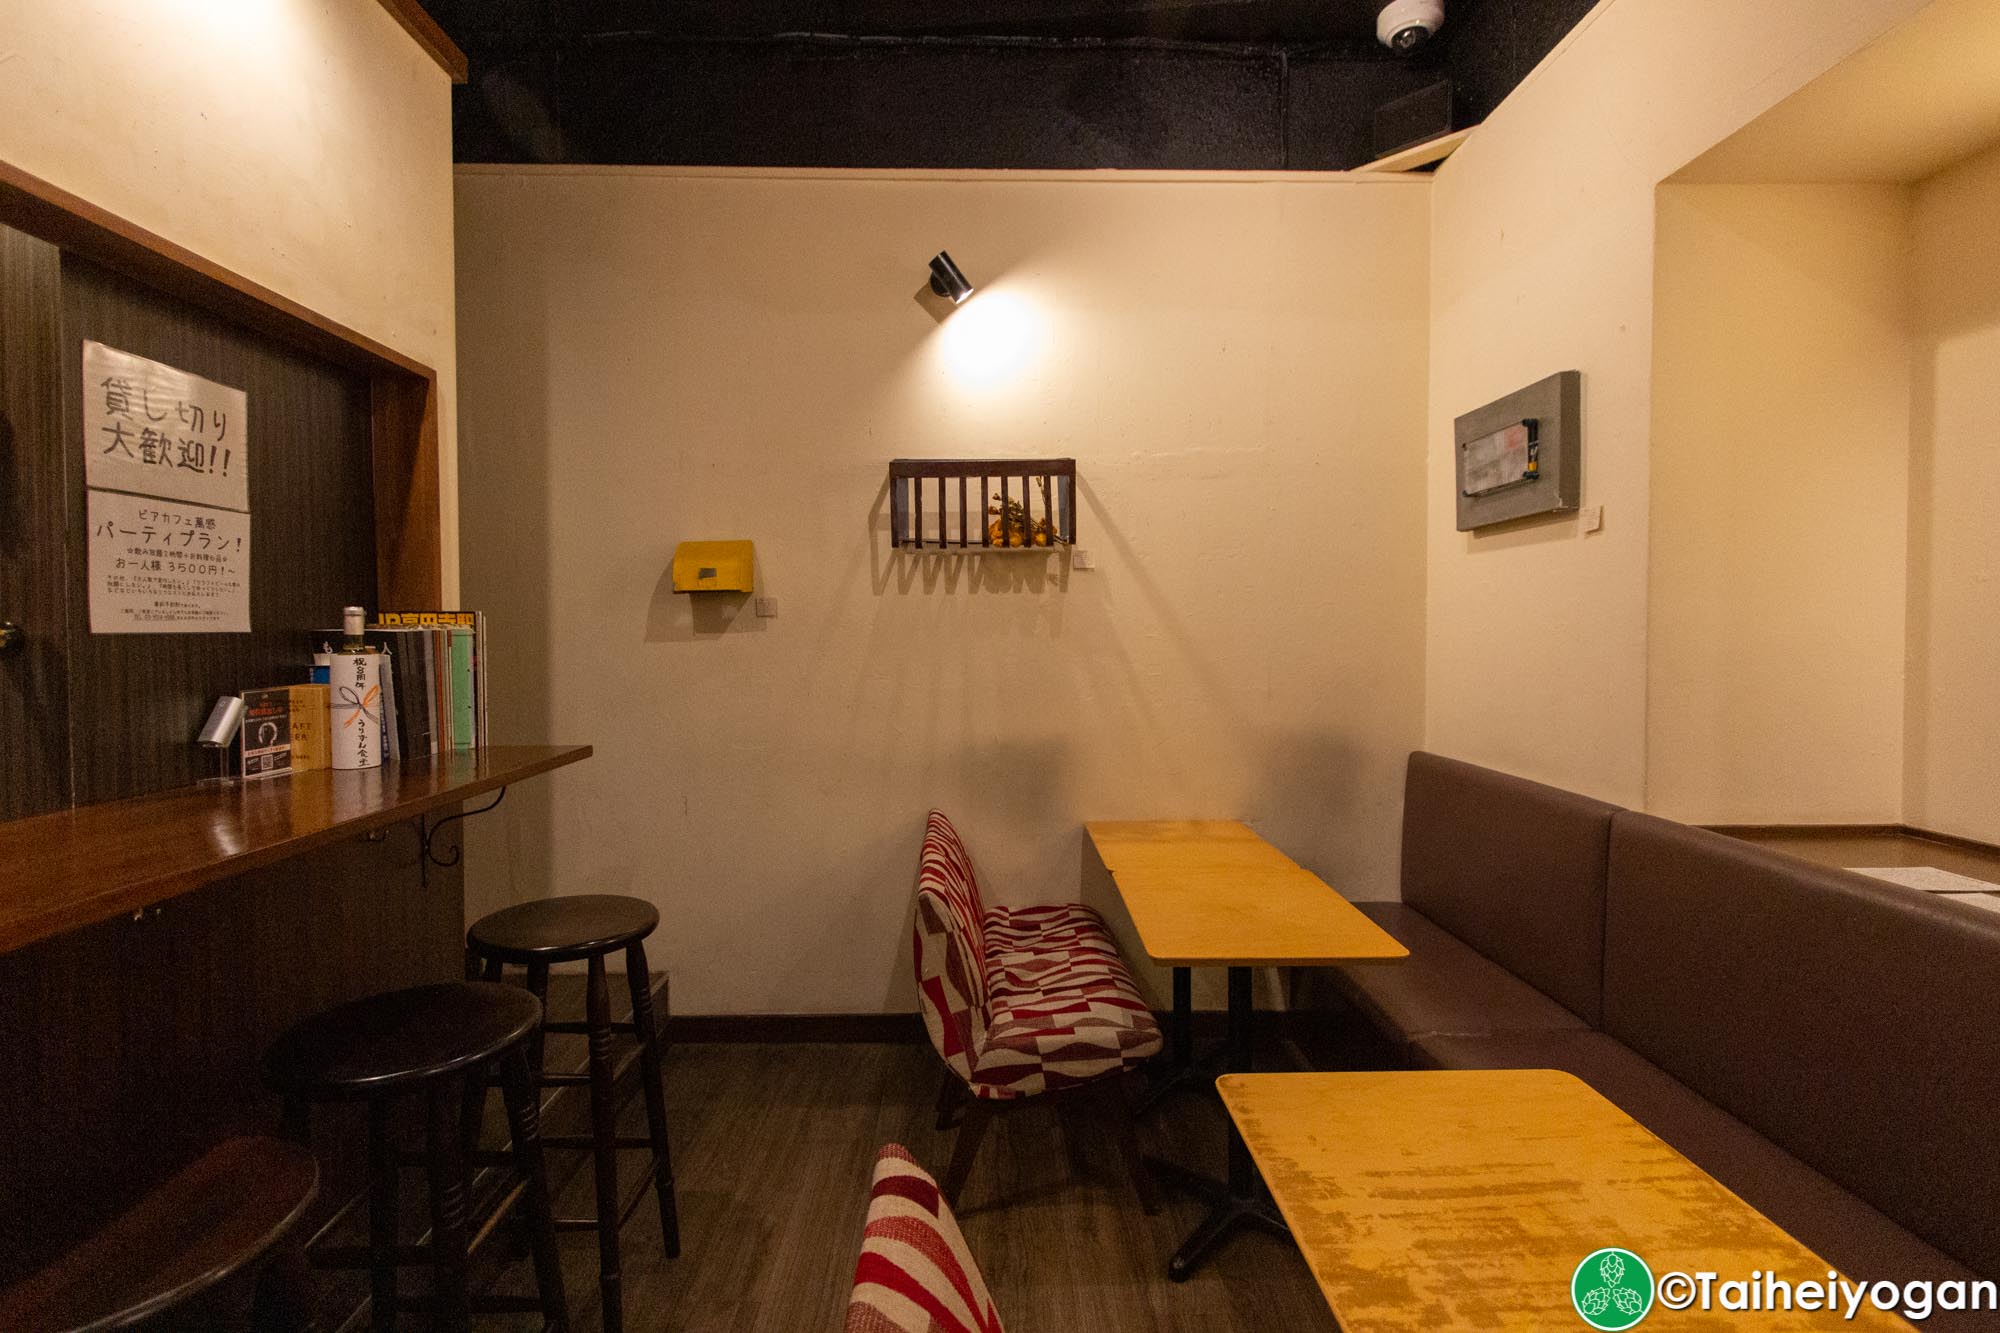 Beer Cafe Ban Kan (ビアカフェ 萬感)-21